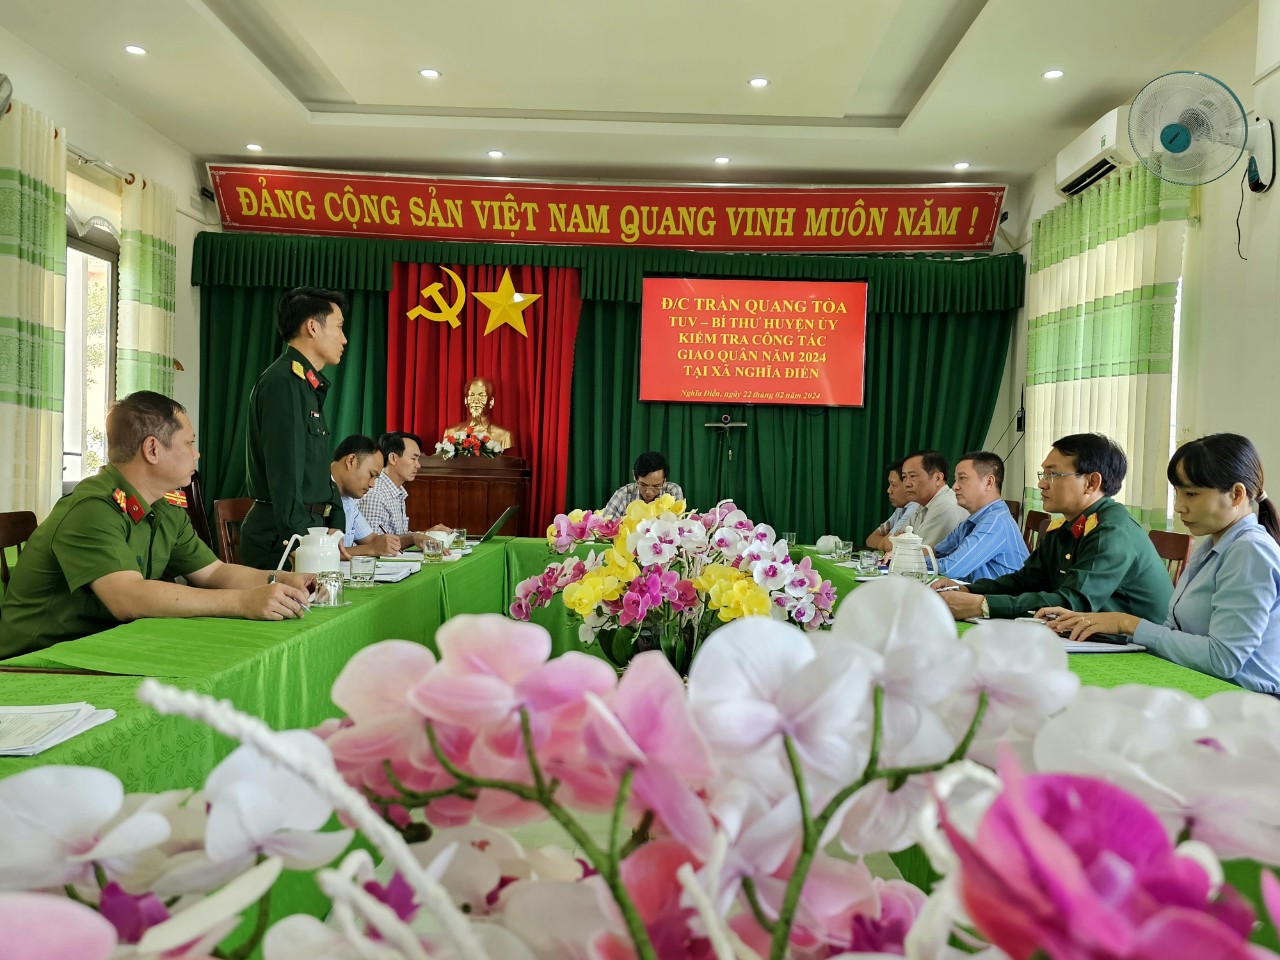 Thiếu tá Đỗ Minh Thành - Chính trị viên Ban chỉ huy Quân sự huyện Tư Nghĩa tham gia phát biểu